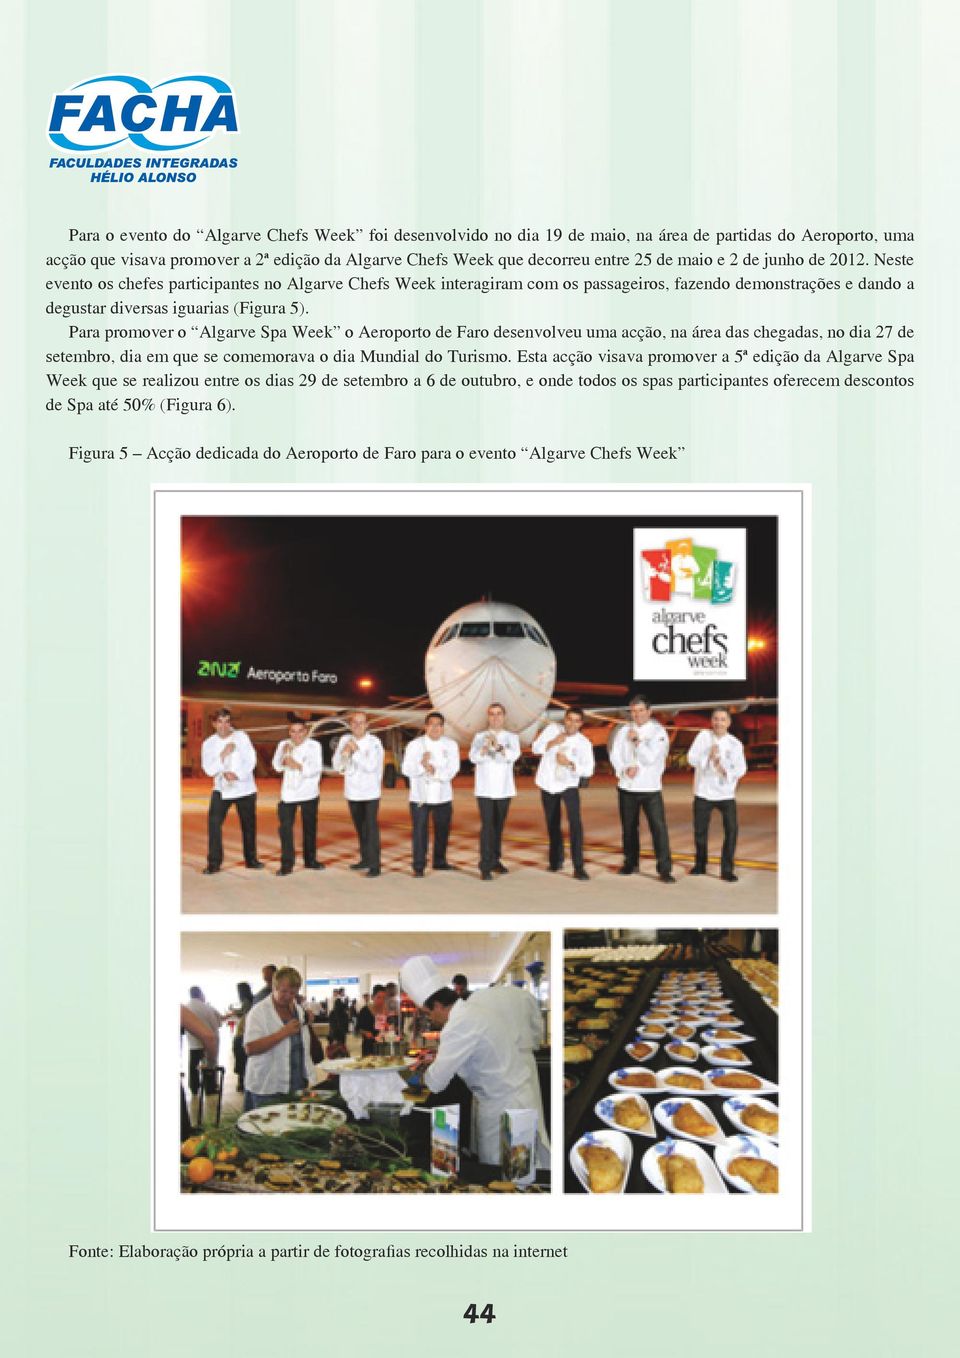 Para promover o Algarve Spa Week o Aeroporto de Faro desenvolveu uma acção, na área das chegadas, no dia 27 de setembro, dia em que se comemorava o dia Mundial do Turismo.